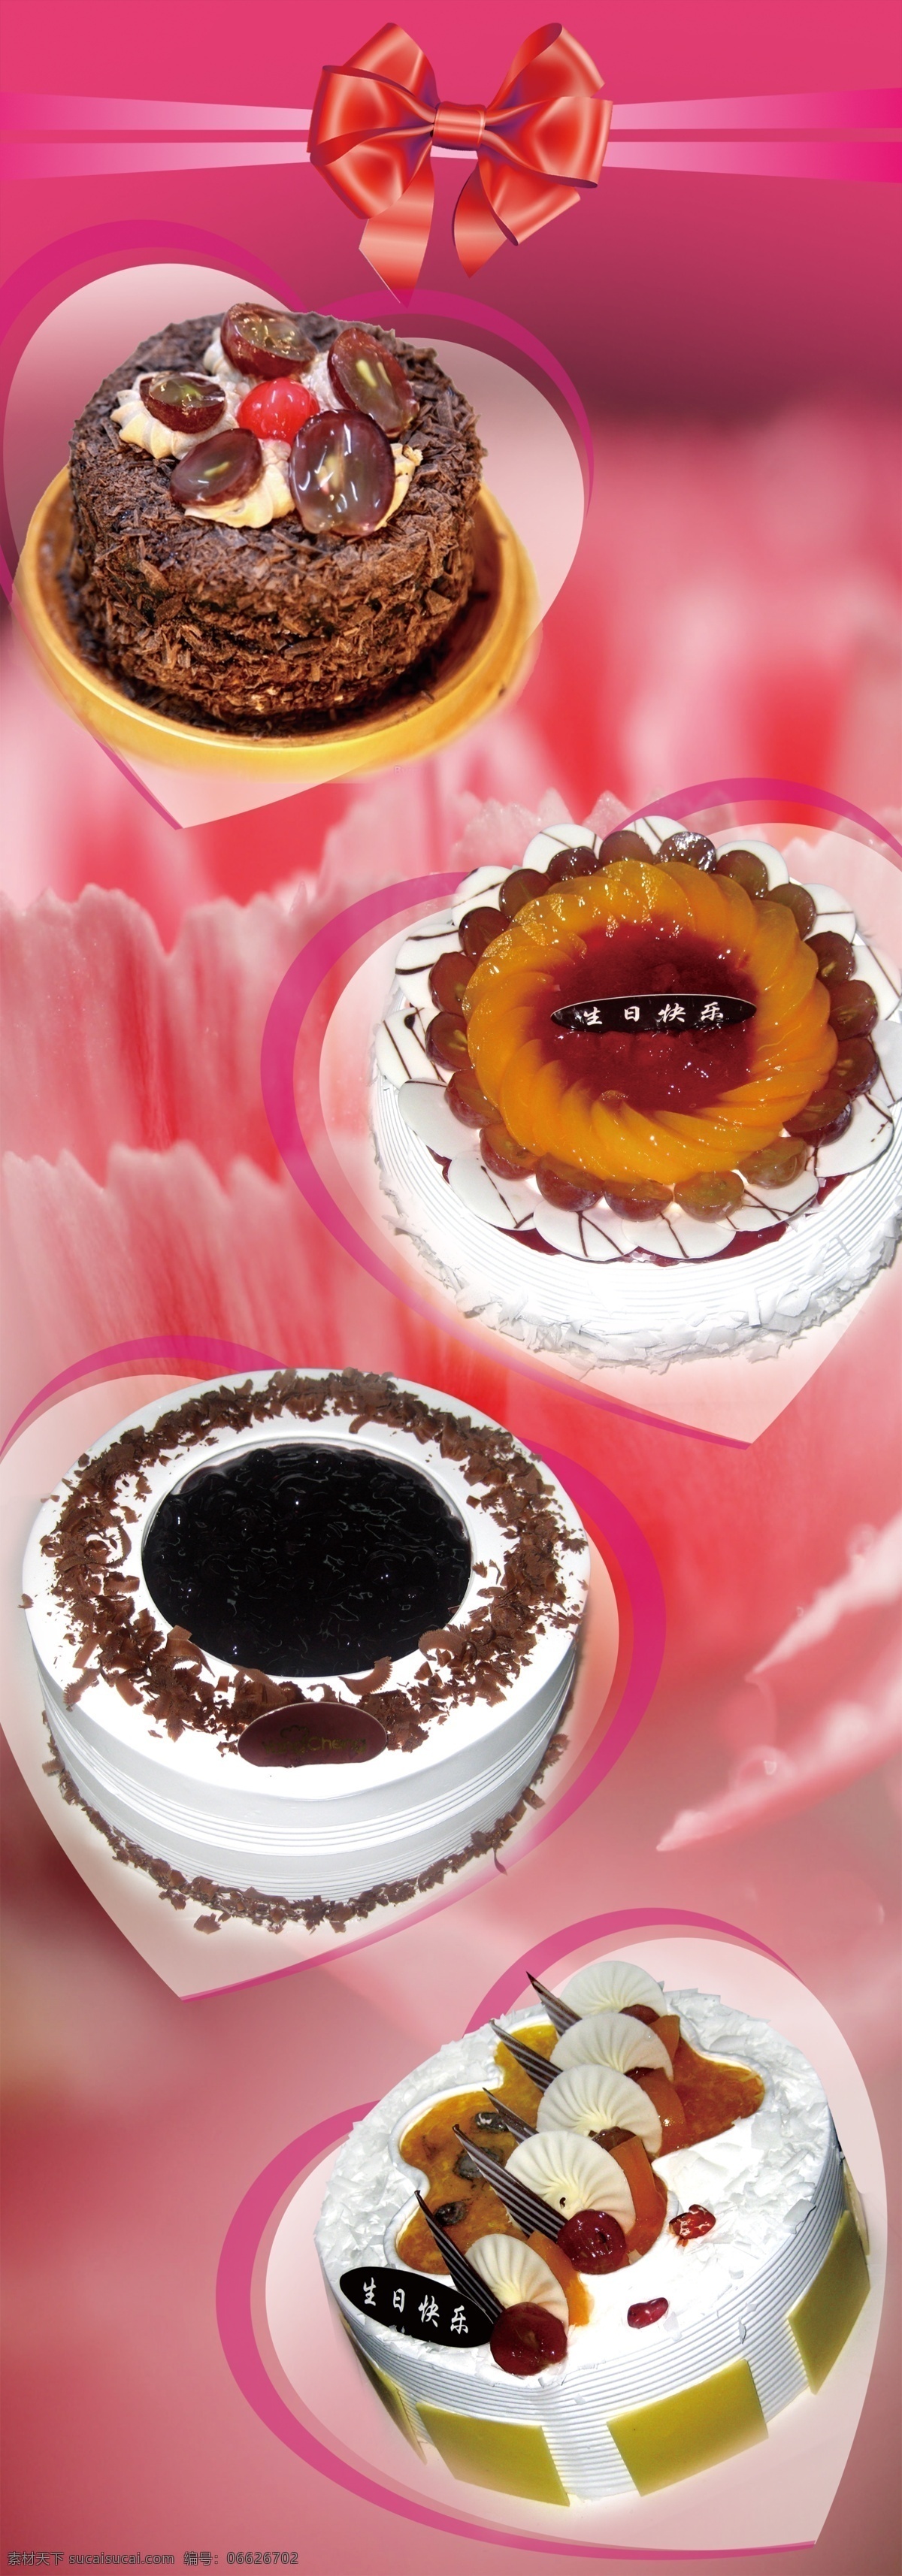 蛋糕海报 柱子贴图 蛋糕样式 粉色背景 巧克力蛋糕 分层图 娱乐餐饮 生活百科 餐饮美食